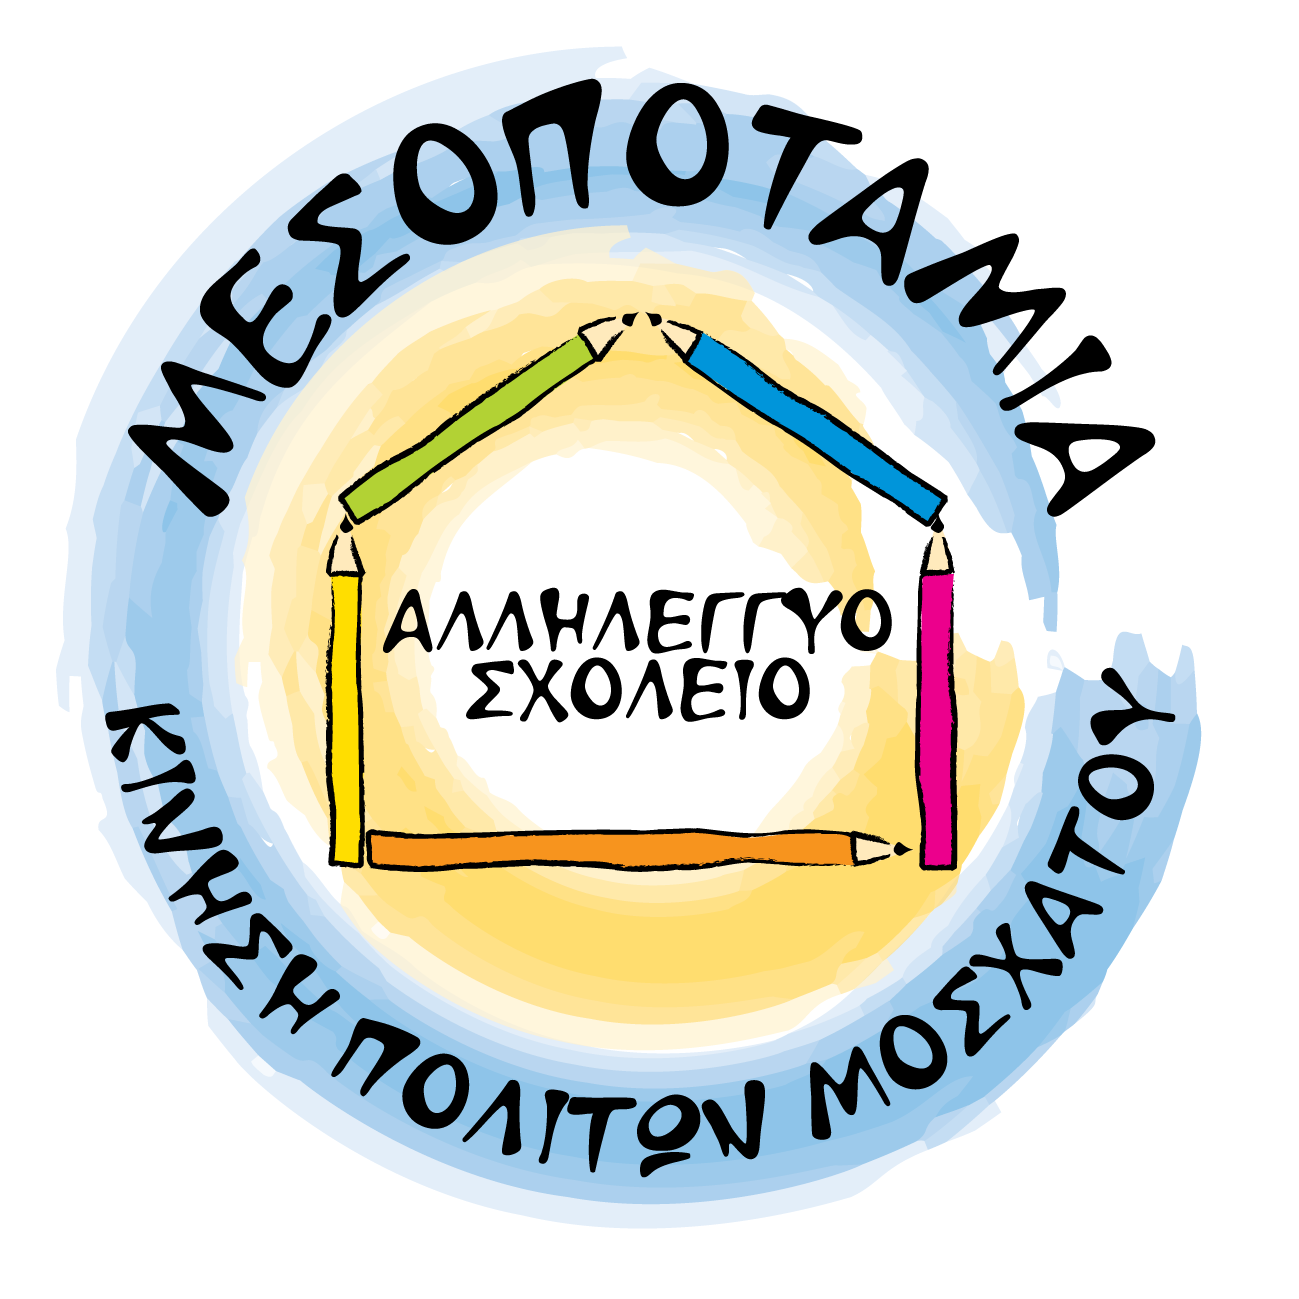 Αλληλέγγυο Σχολείο Μεσοποταμίας | Terms of Use logo